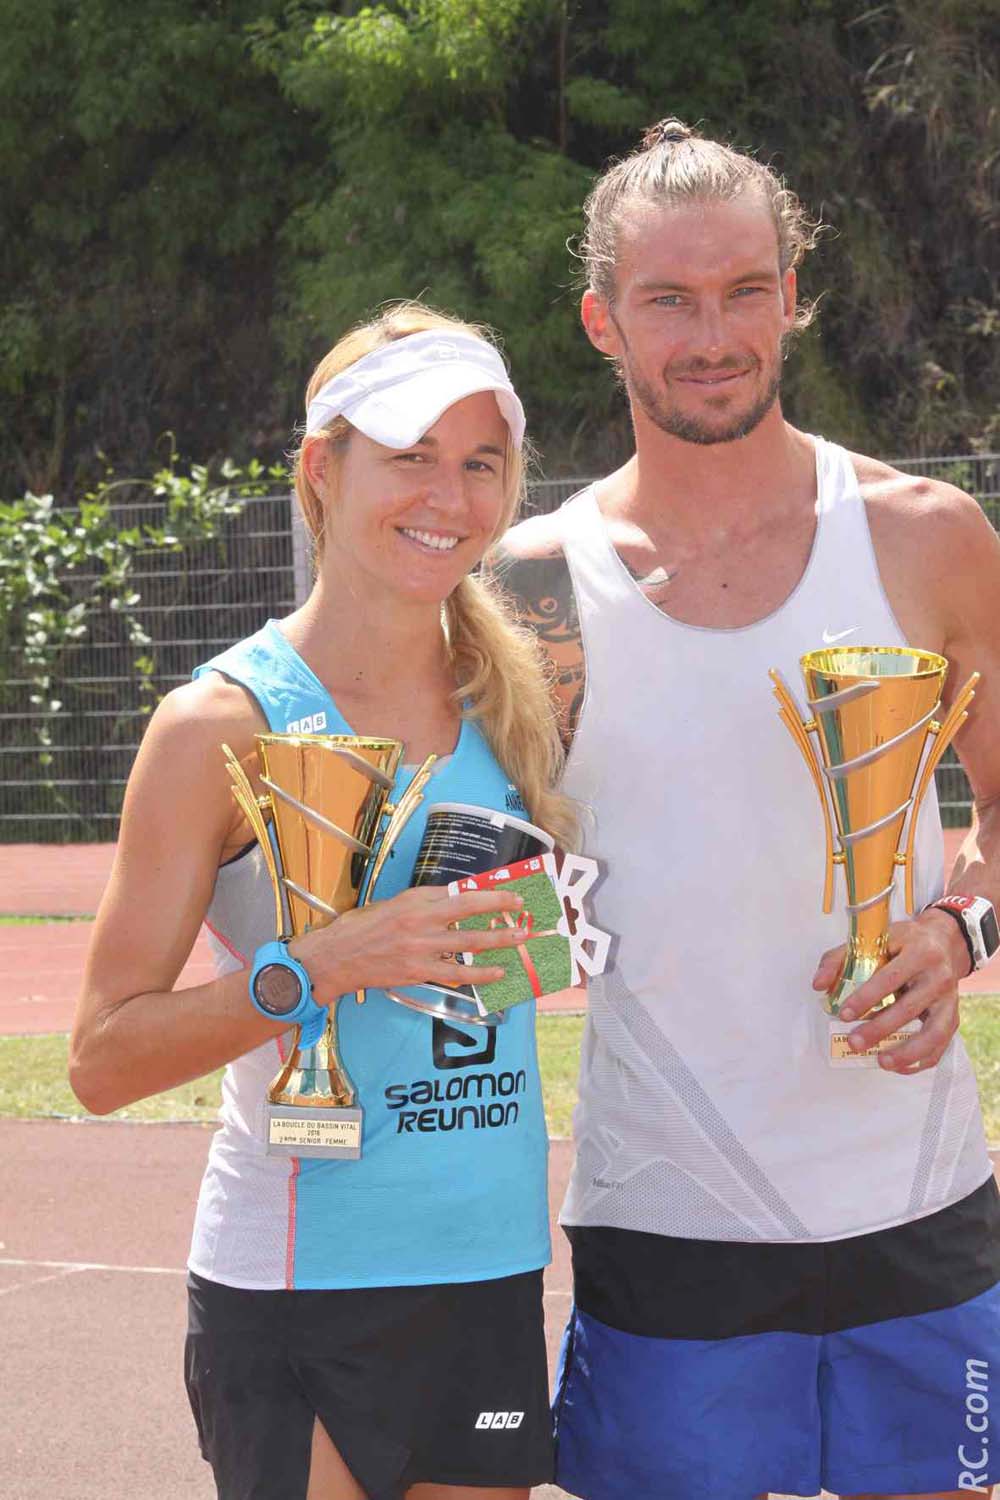 Anne-Cécile Delchini et Simon Paillard , vainqueurs respectivement en 2015 et en 2014, seront sur la ligne de départ. Deux athlètes à surveiller de très près.